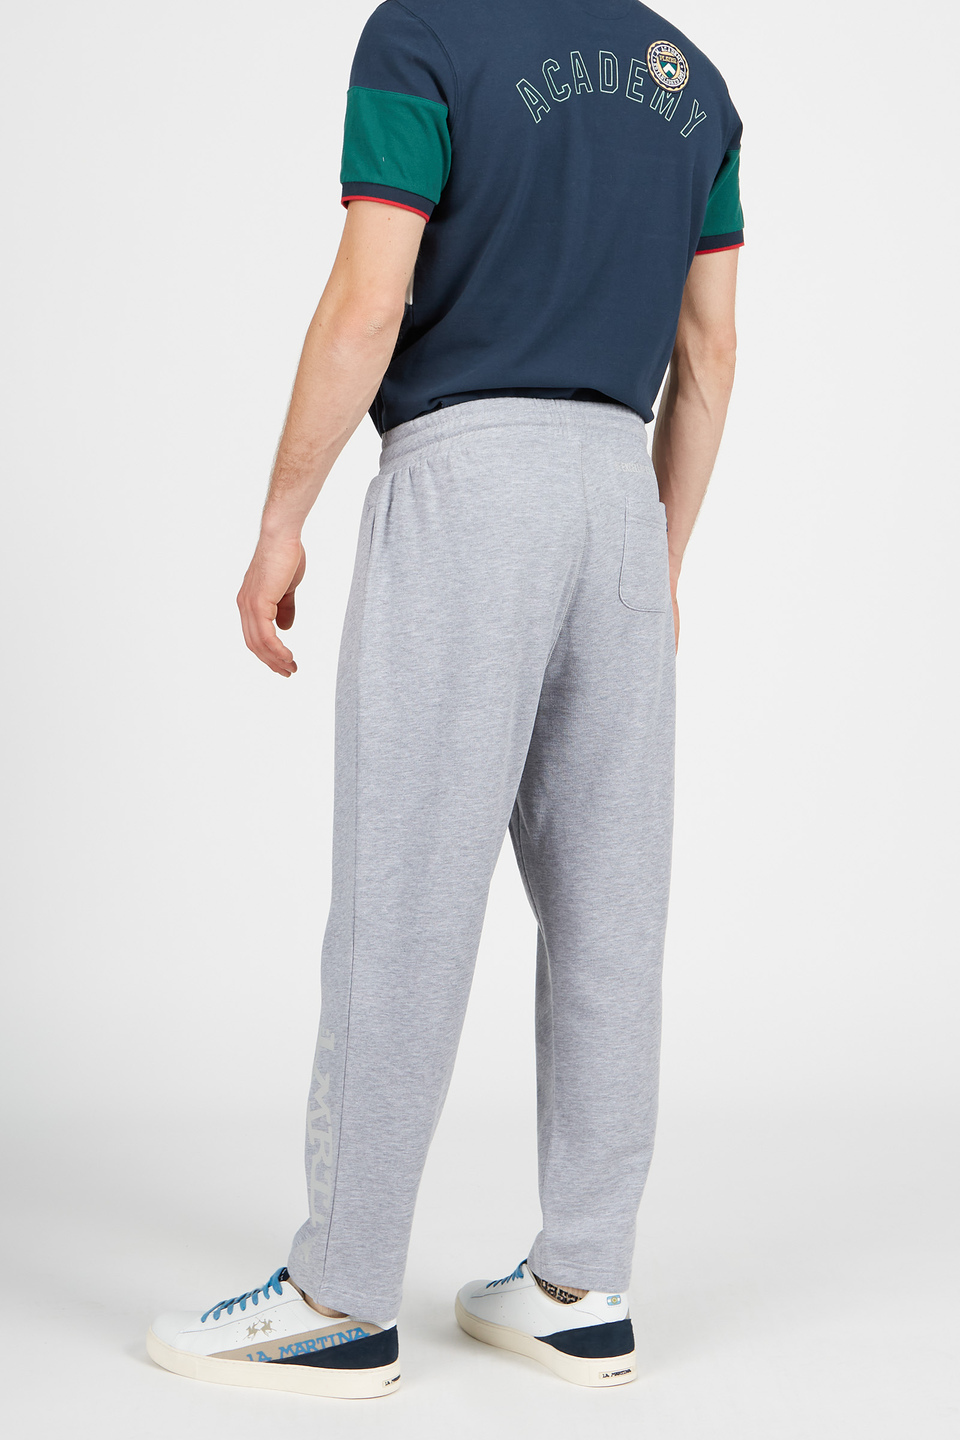 Pantalon homme de joggeur en coton avec cordon de serrage | La Martina - Official Online Shop